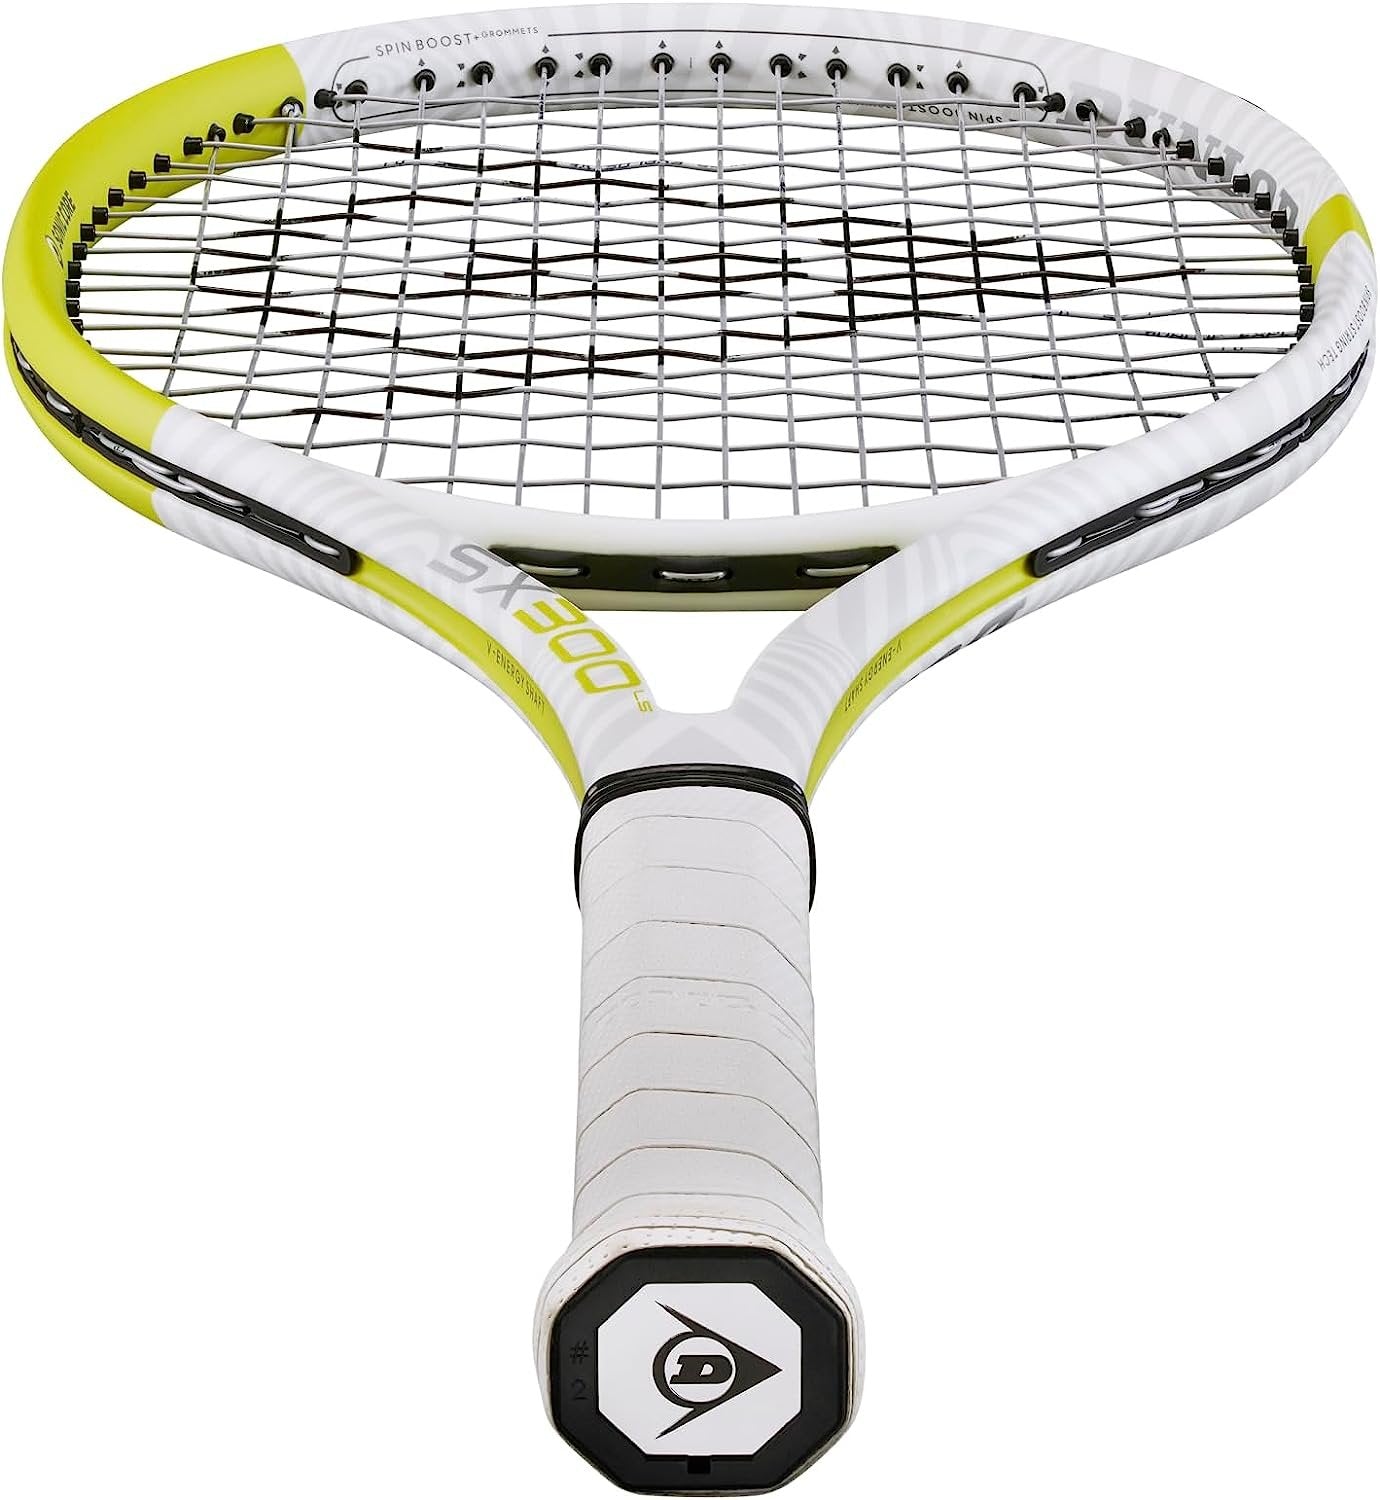 Dunlop SX300 LS Limited Tennis Racquet